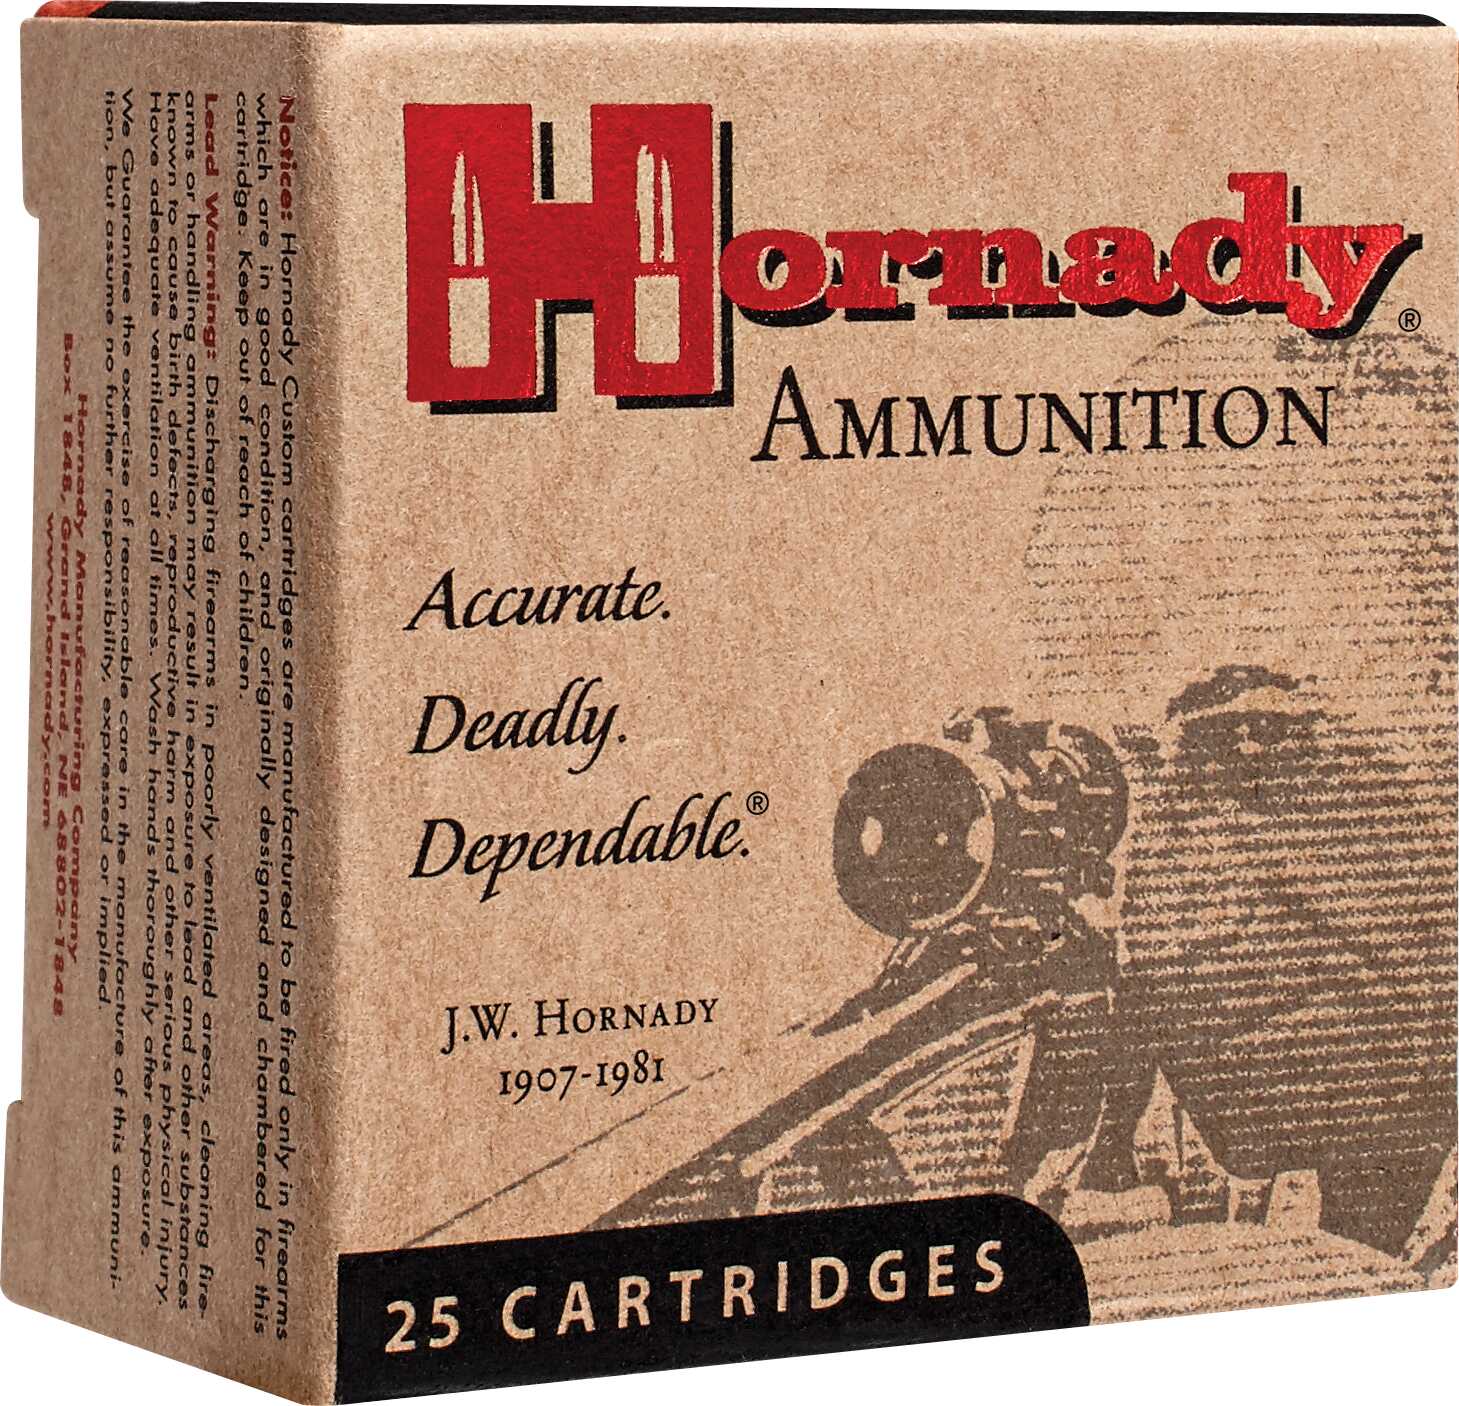 10mm 155 Grain Hollow Point 20 Rounds Hornady Ammunition